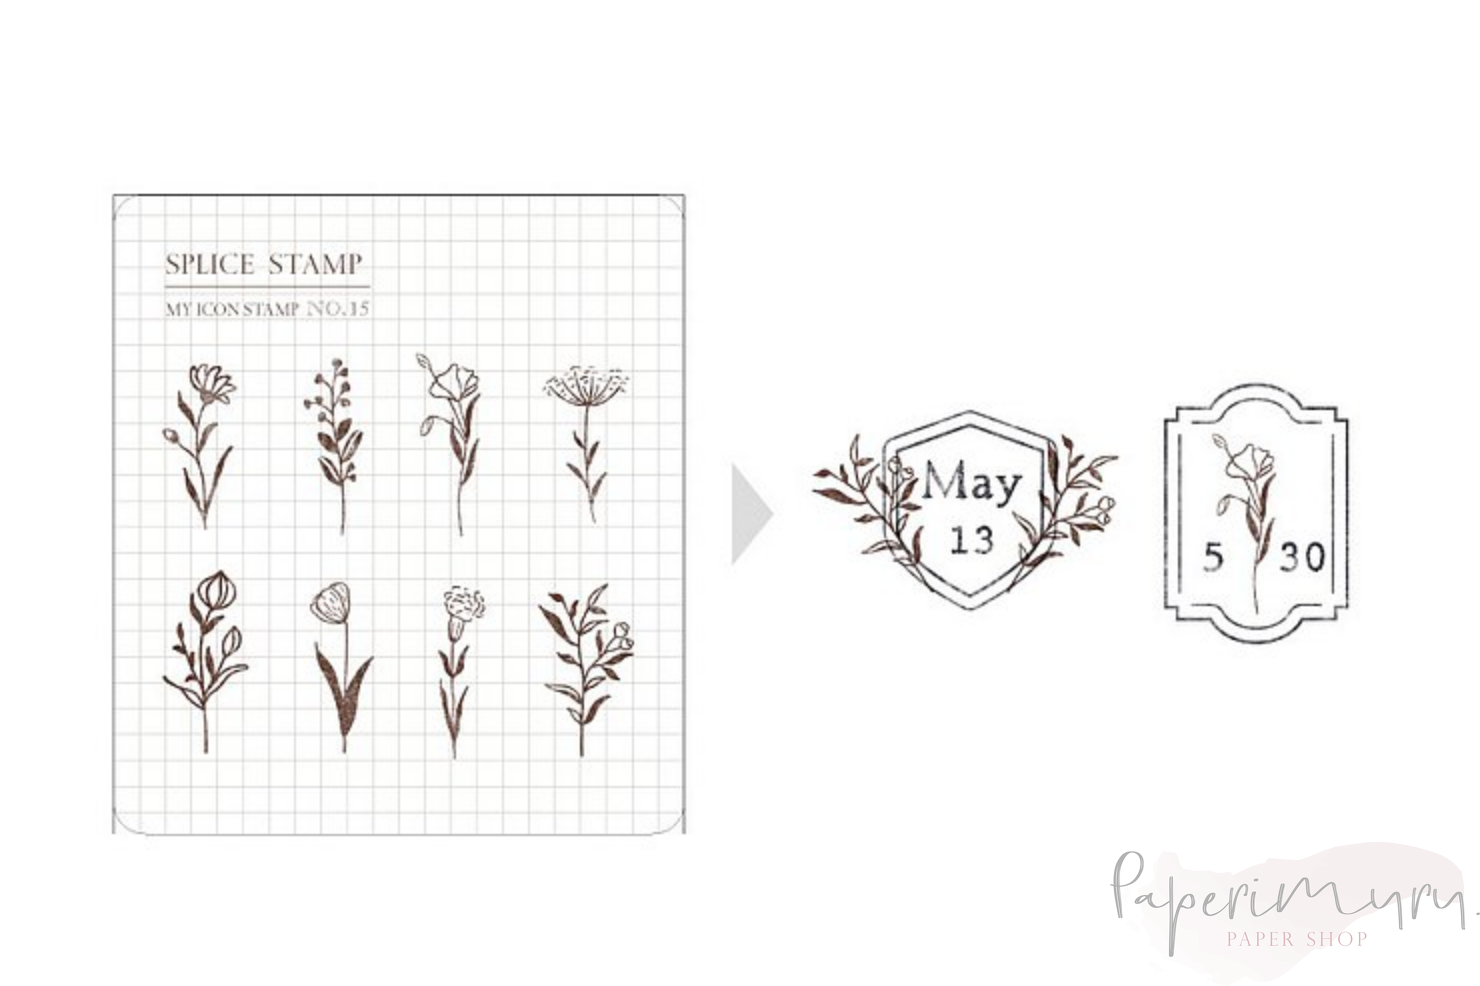 My Icon Stamp Rubberstamp Set No.15 Flower Days